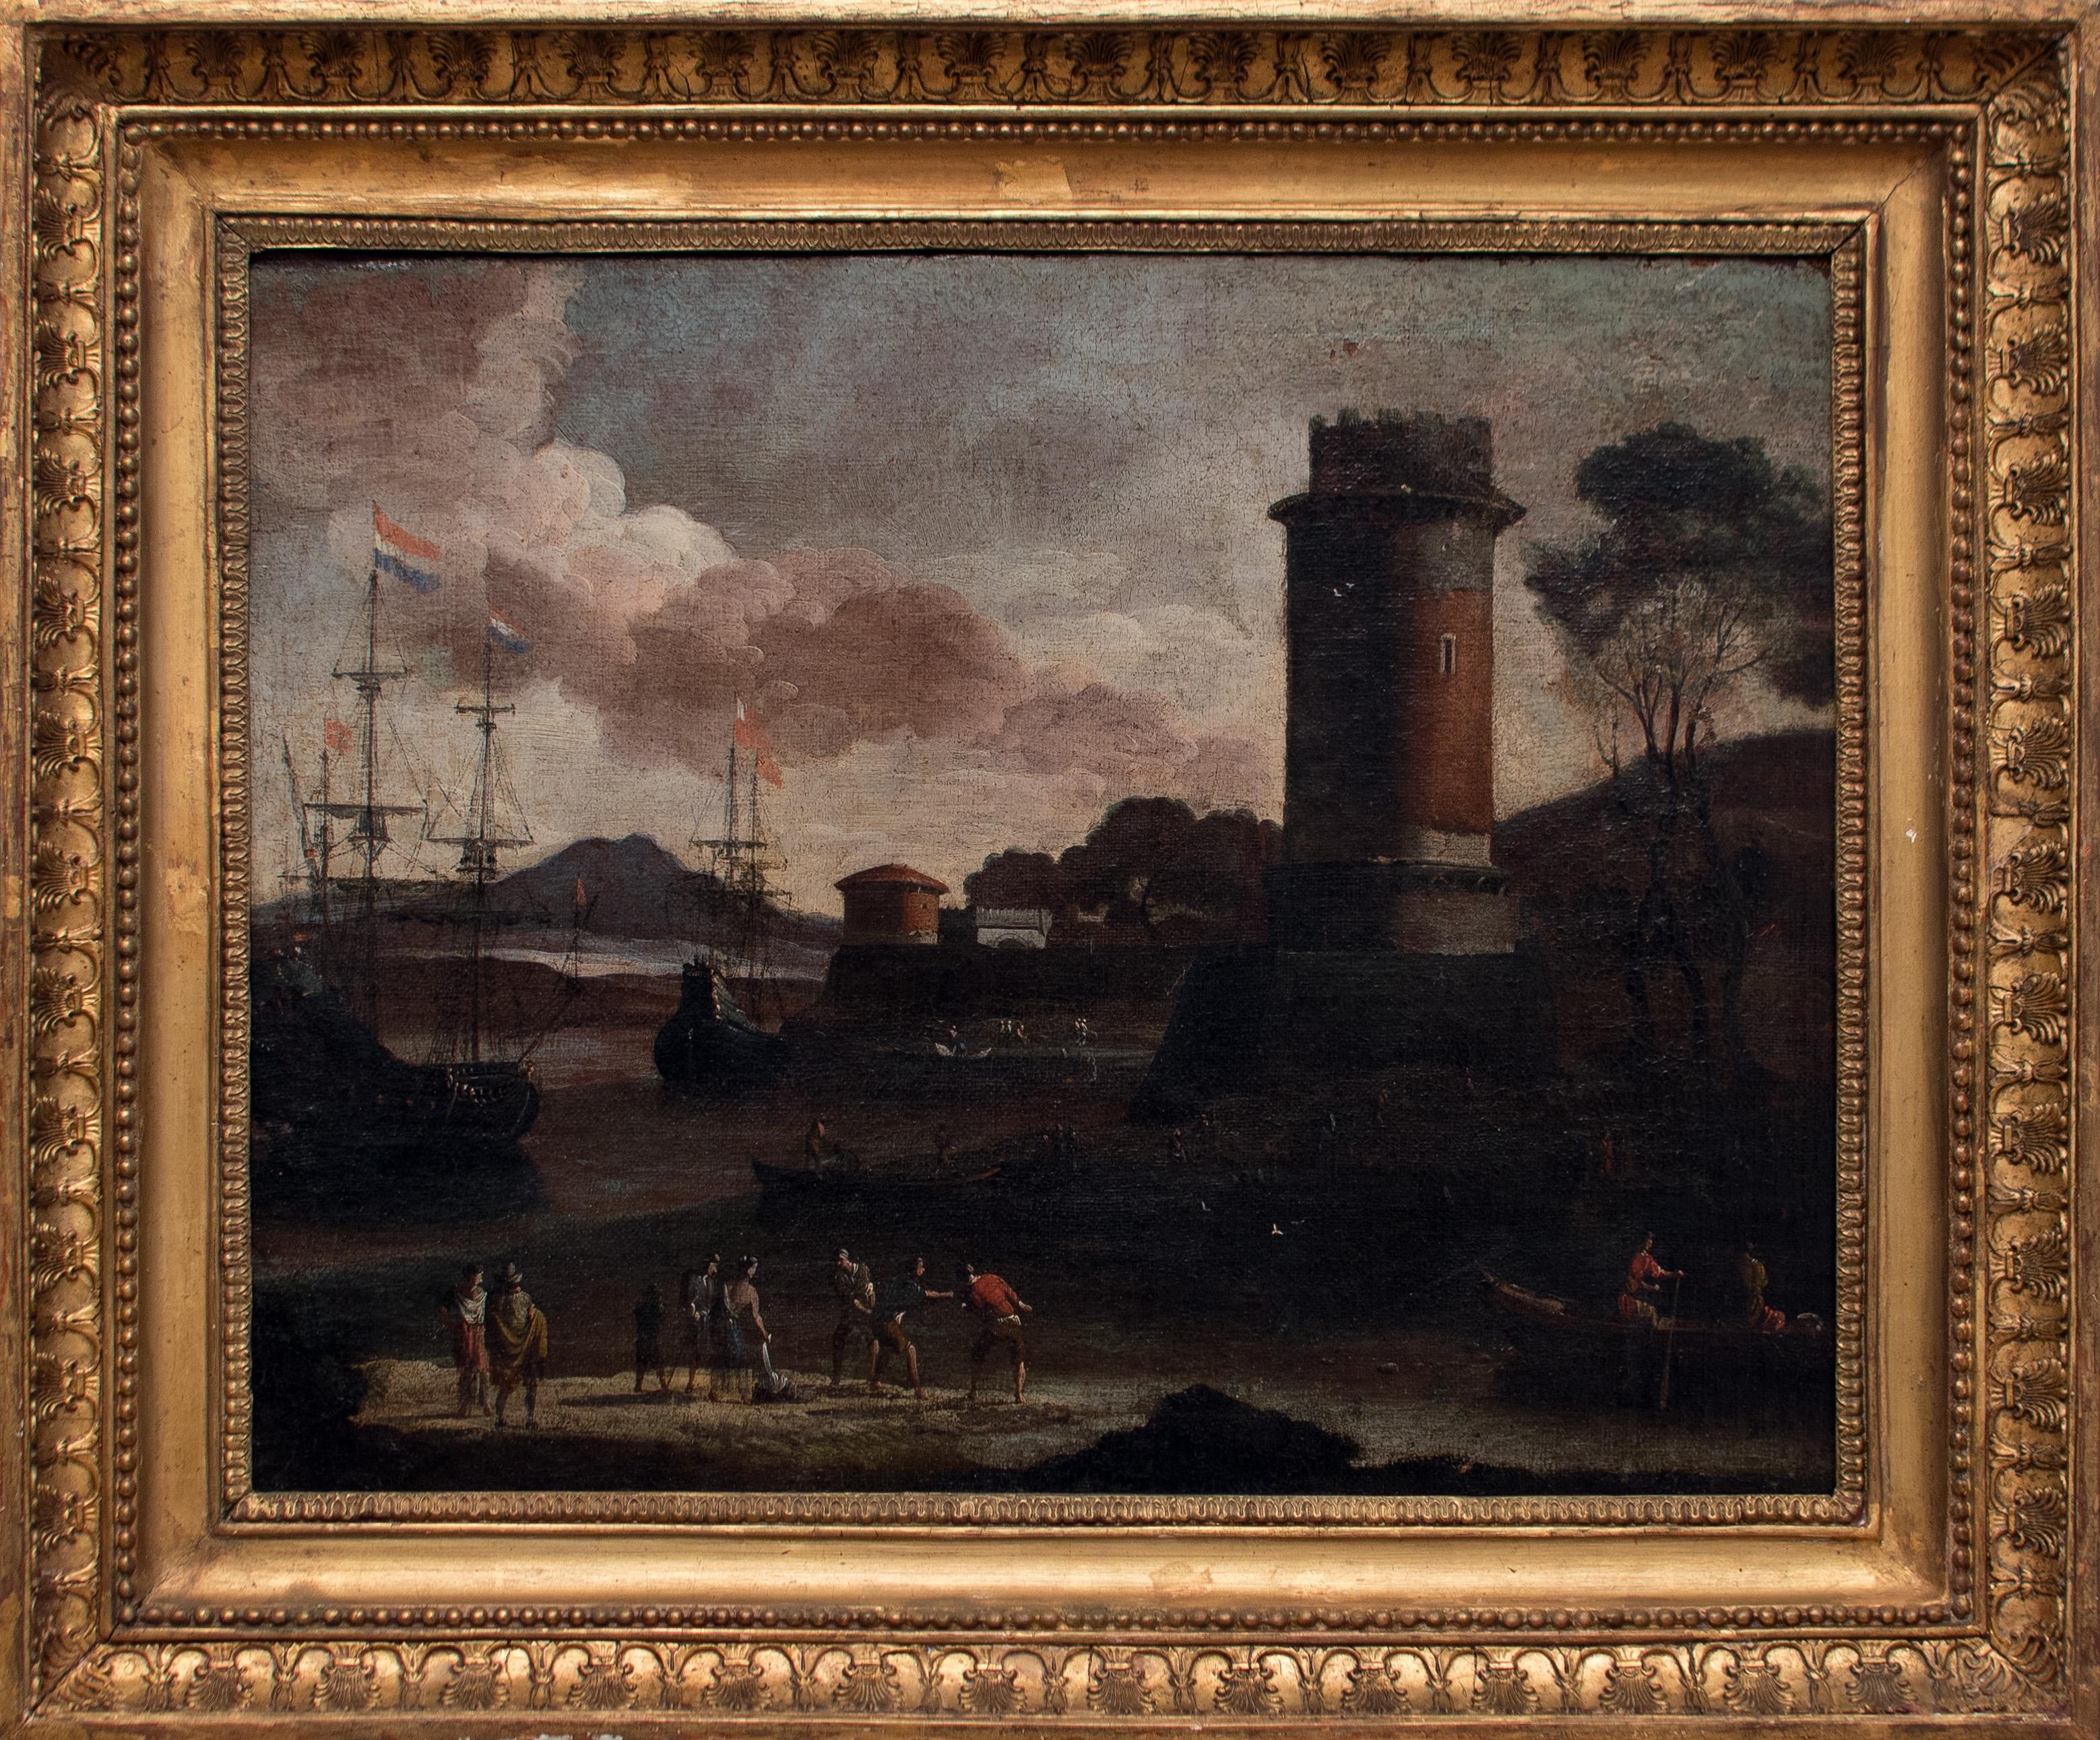 Port View with Tower - Original Oil on Canvas by Adriaen van Der Cabel - 1600 - Painting by Adriaen van der Cabel